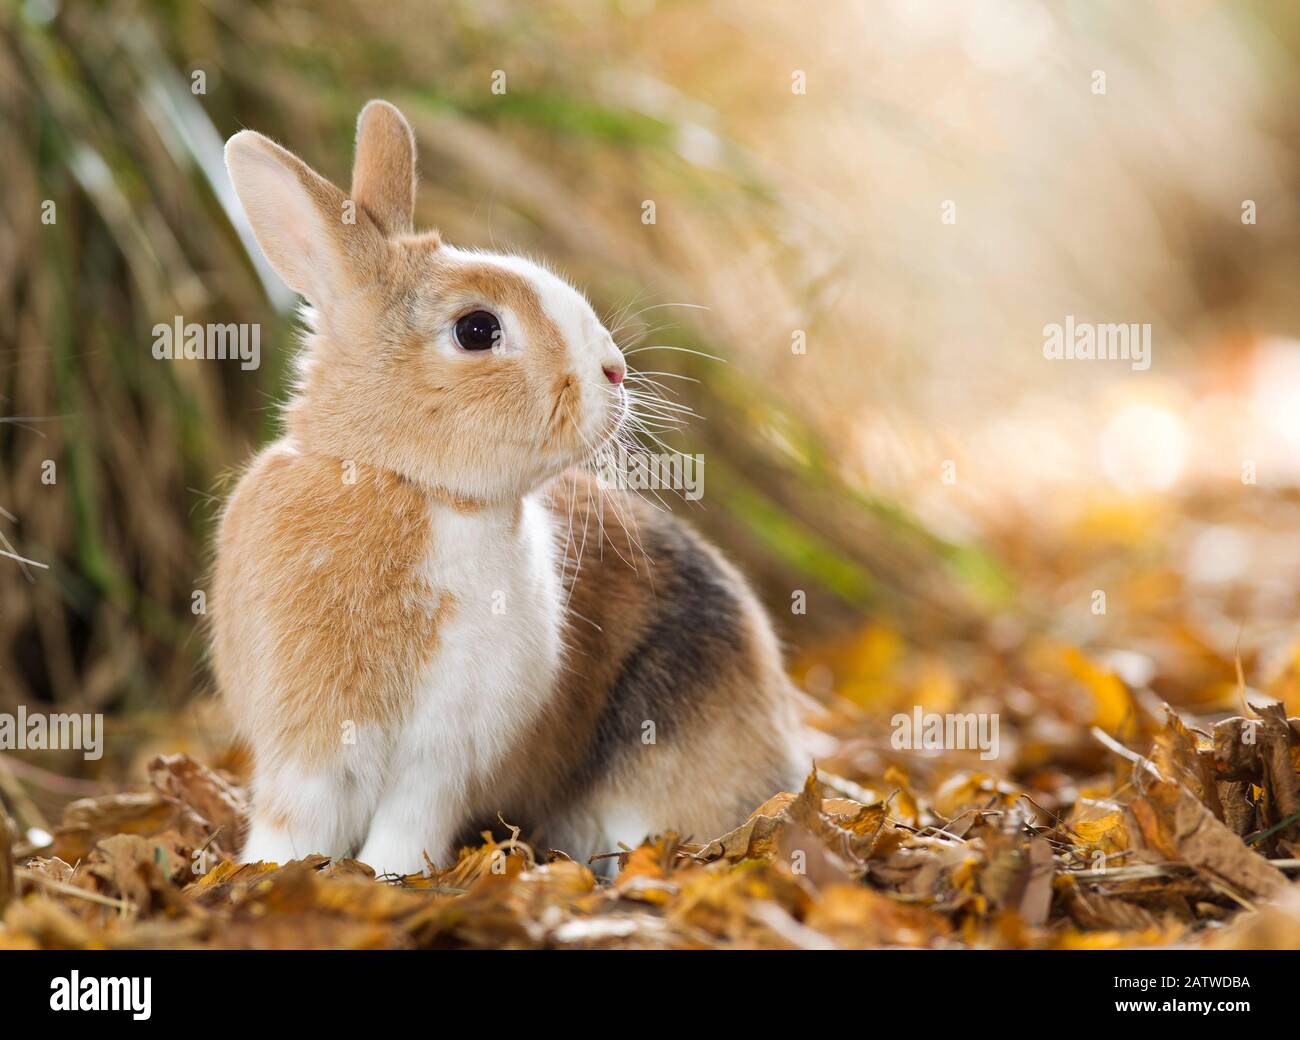 Netherland coniglio nano seduto in foglie d'autunno secche. Germania Foto Stock